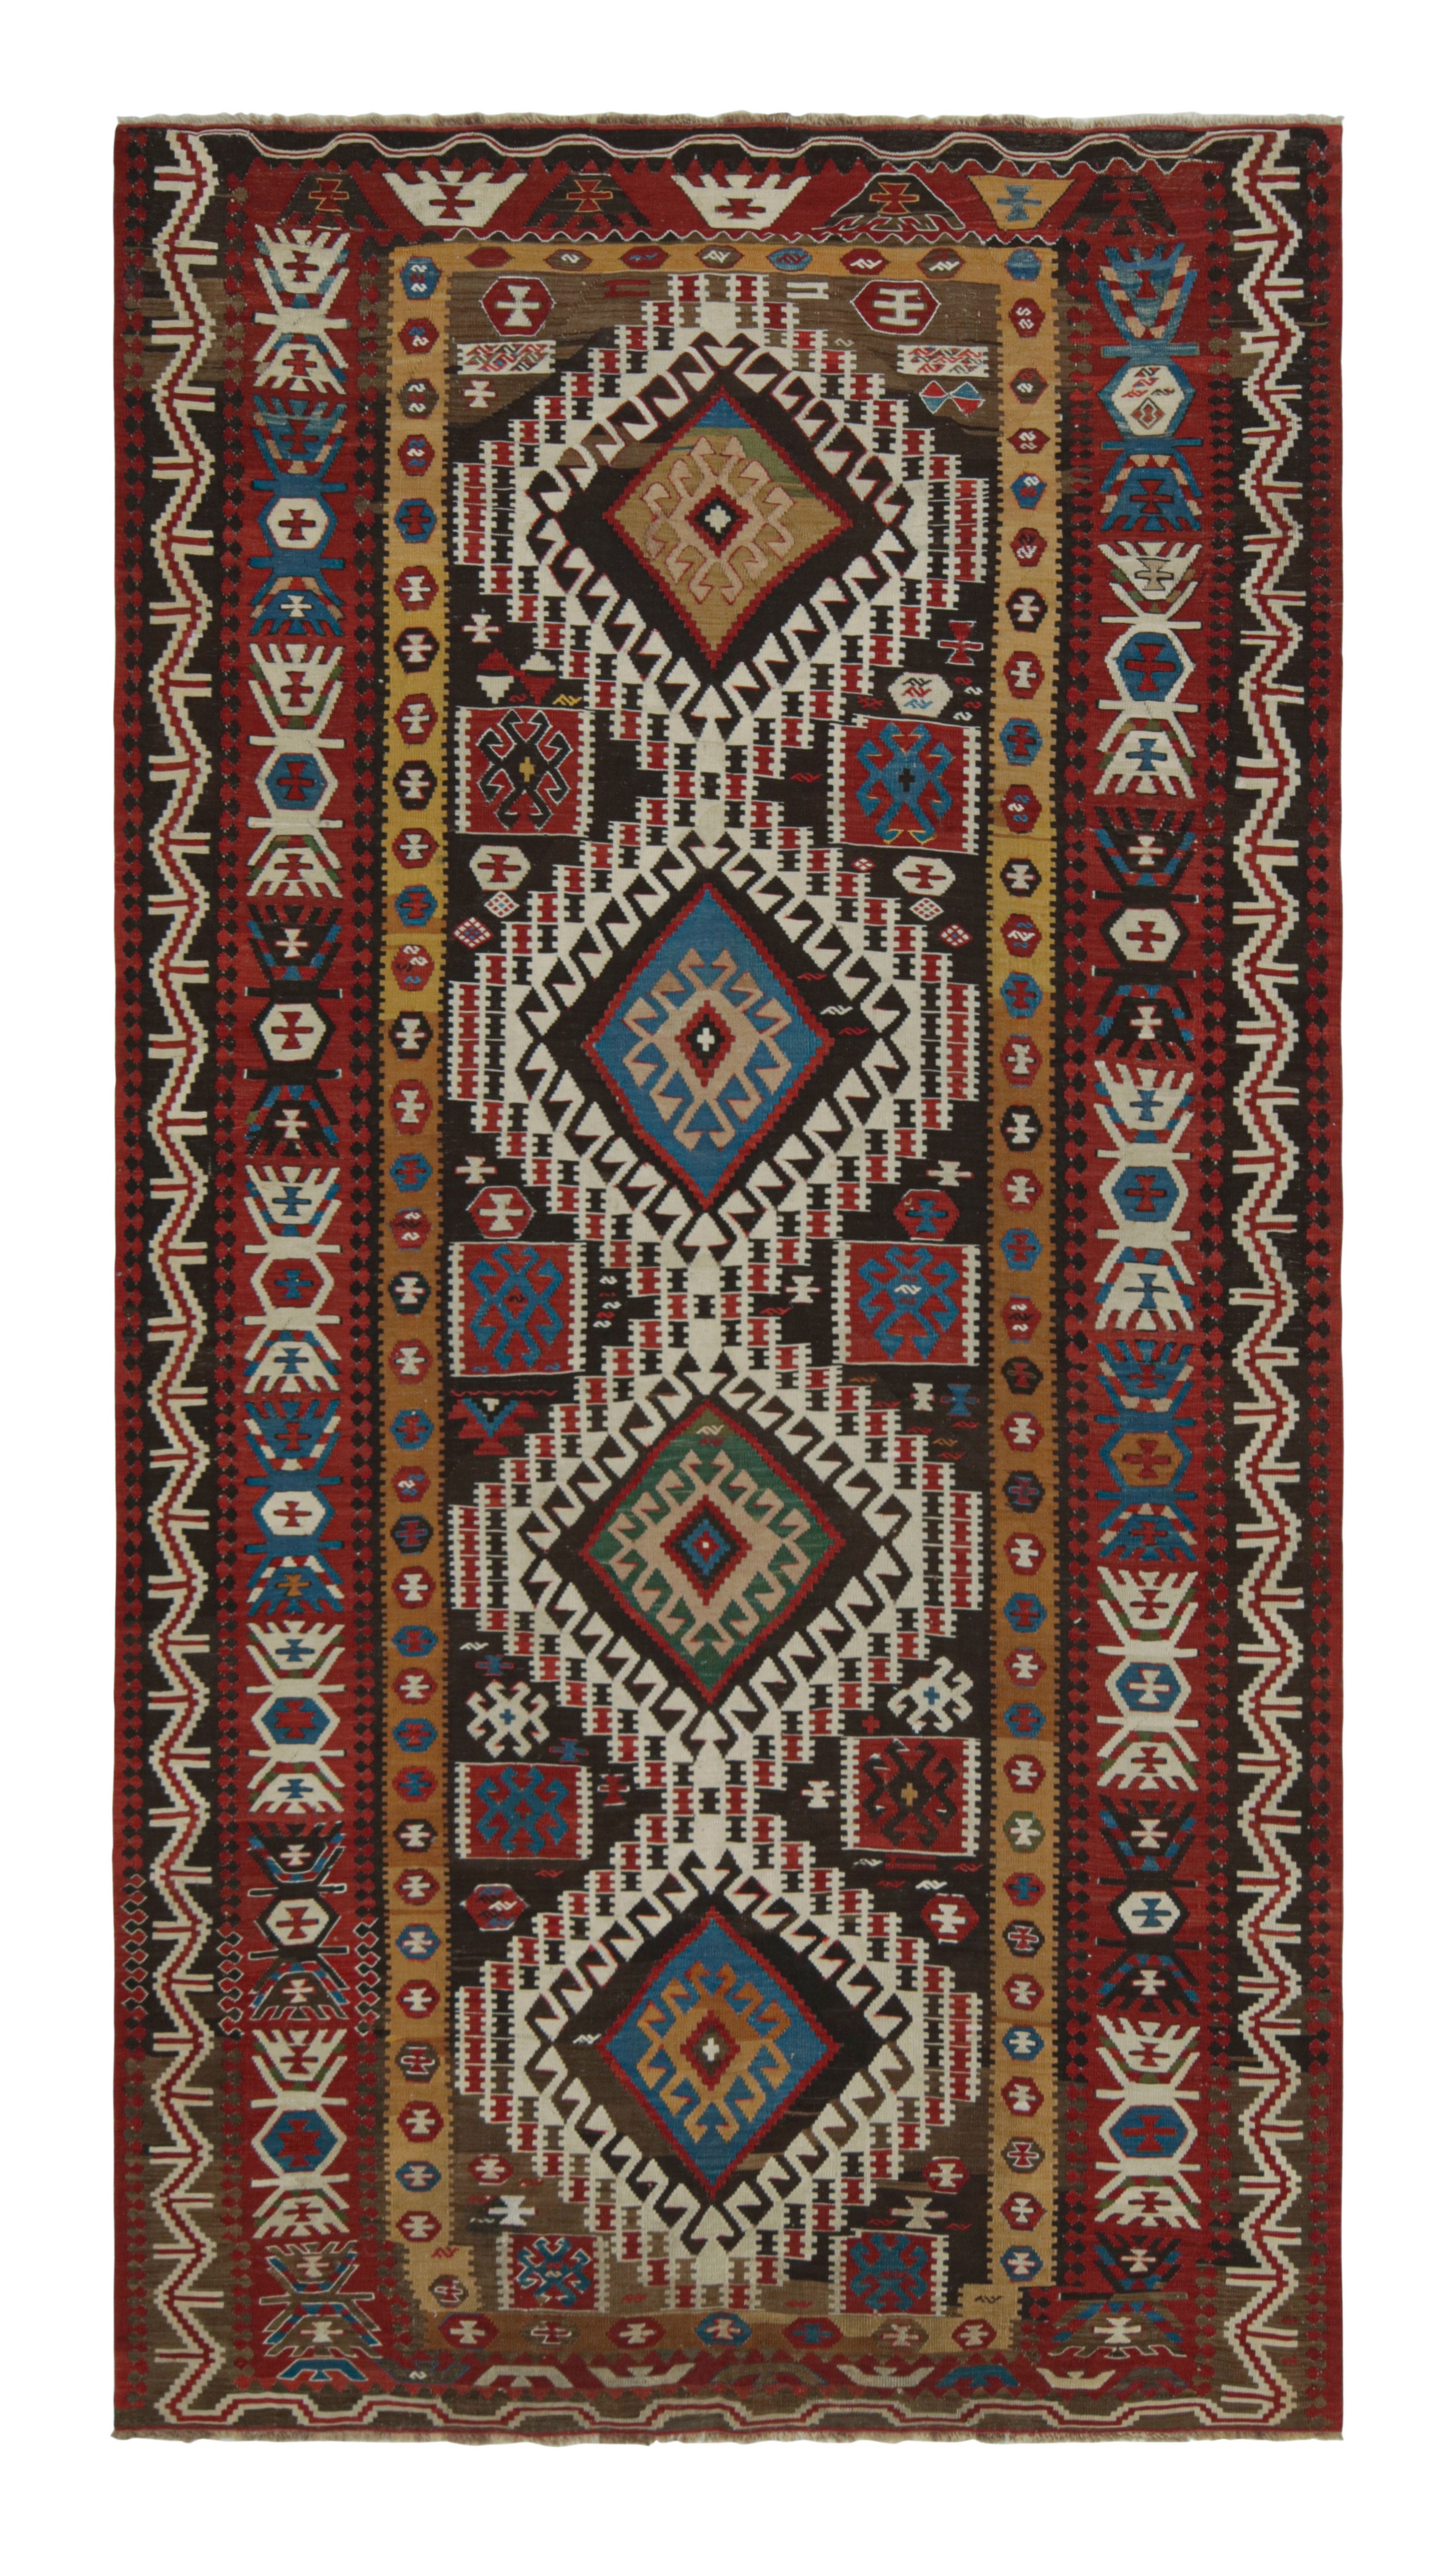 Vintage Midcentury Surakhani Geometric Beige-Brown and Burgundy Wool Kilim Rug